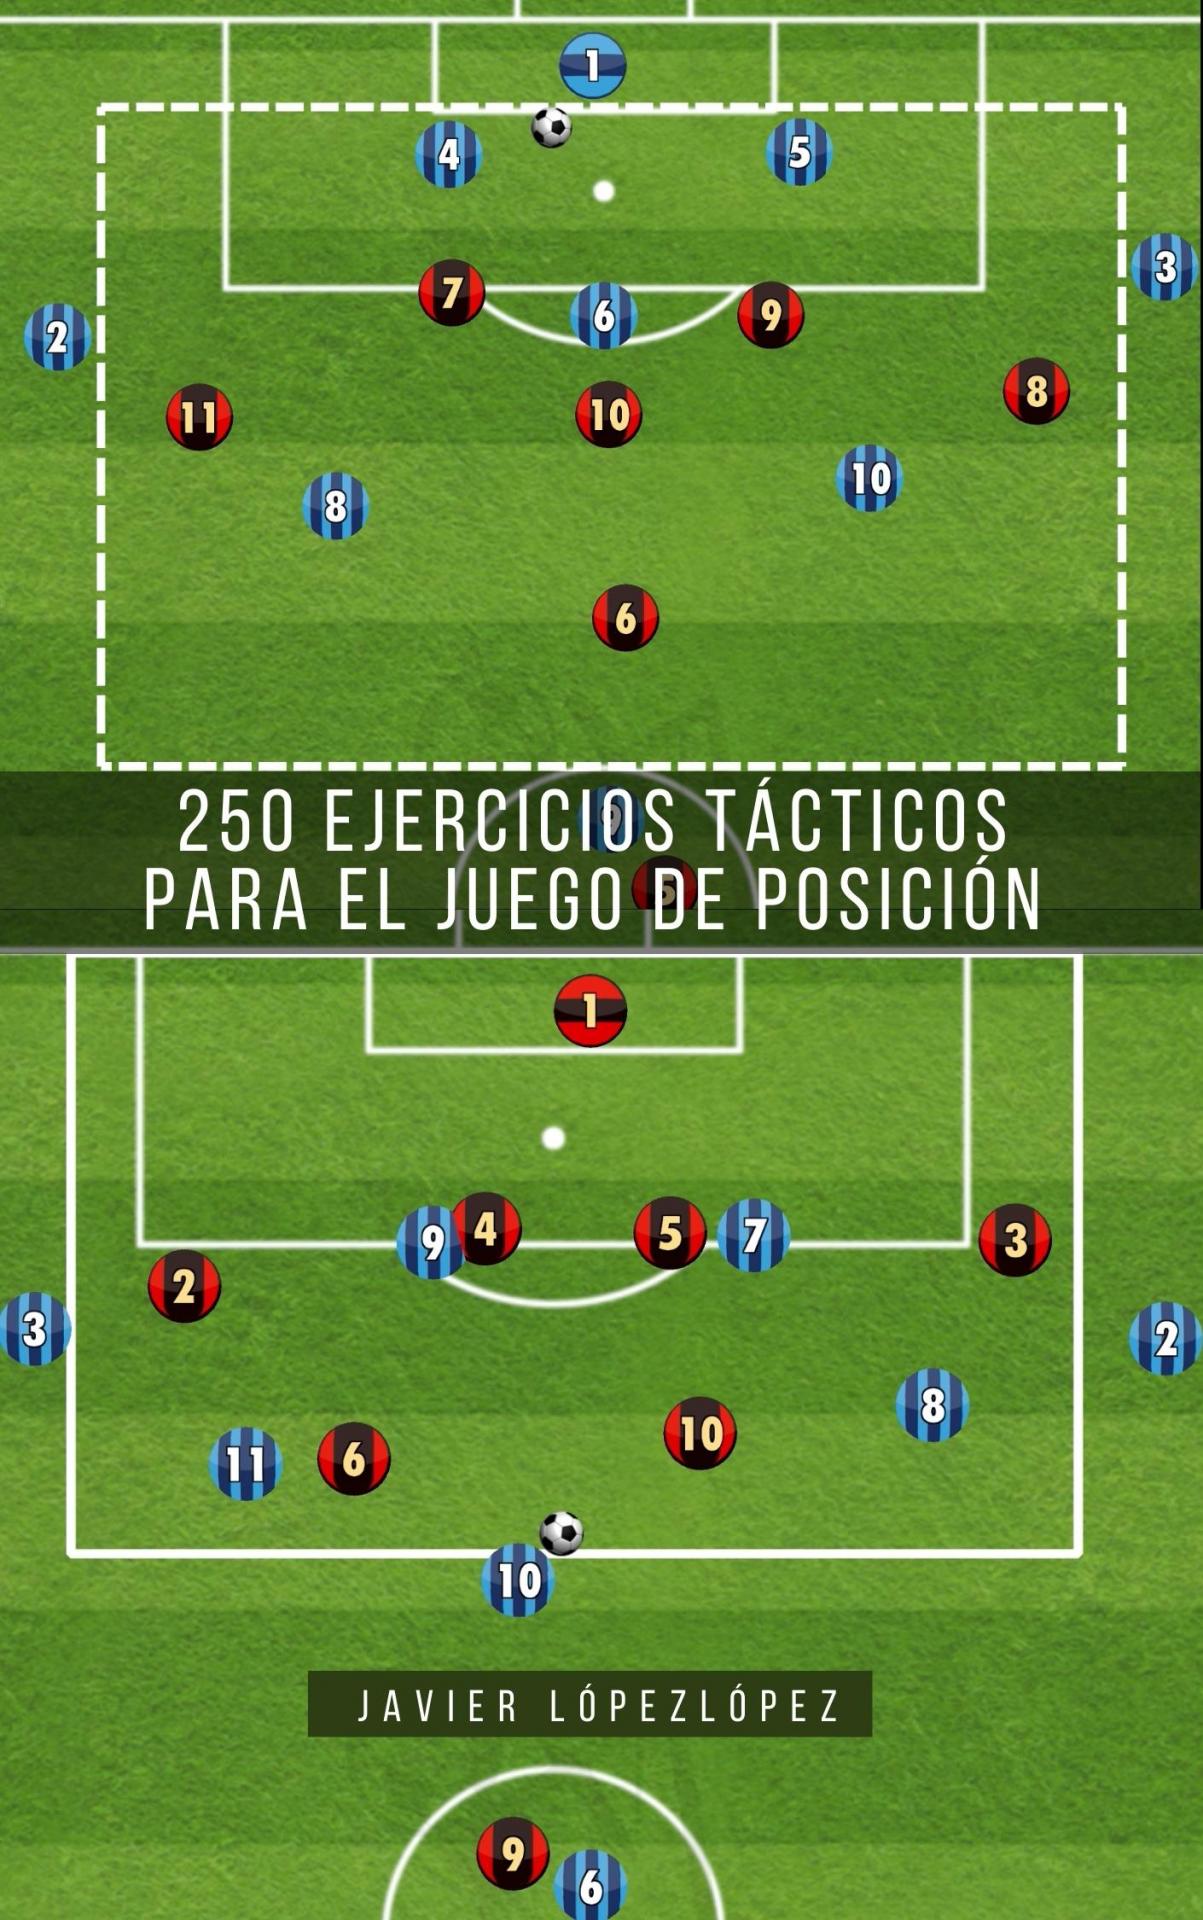 250 ejercicios tácticos para el juego de posición en formato pdf